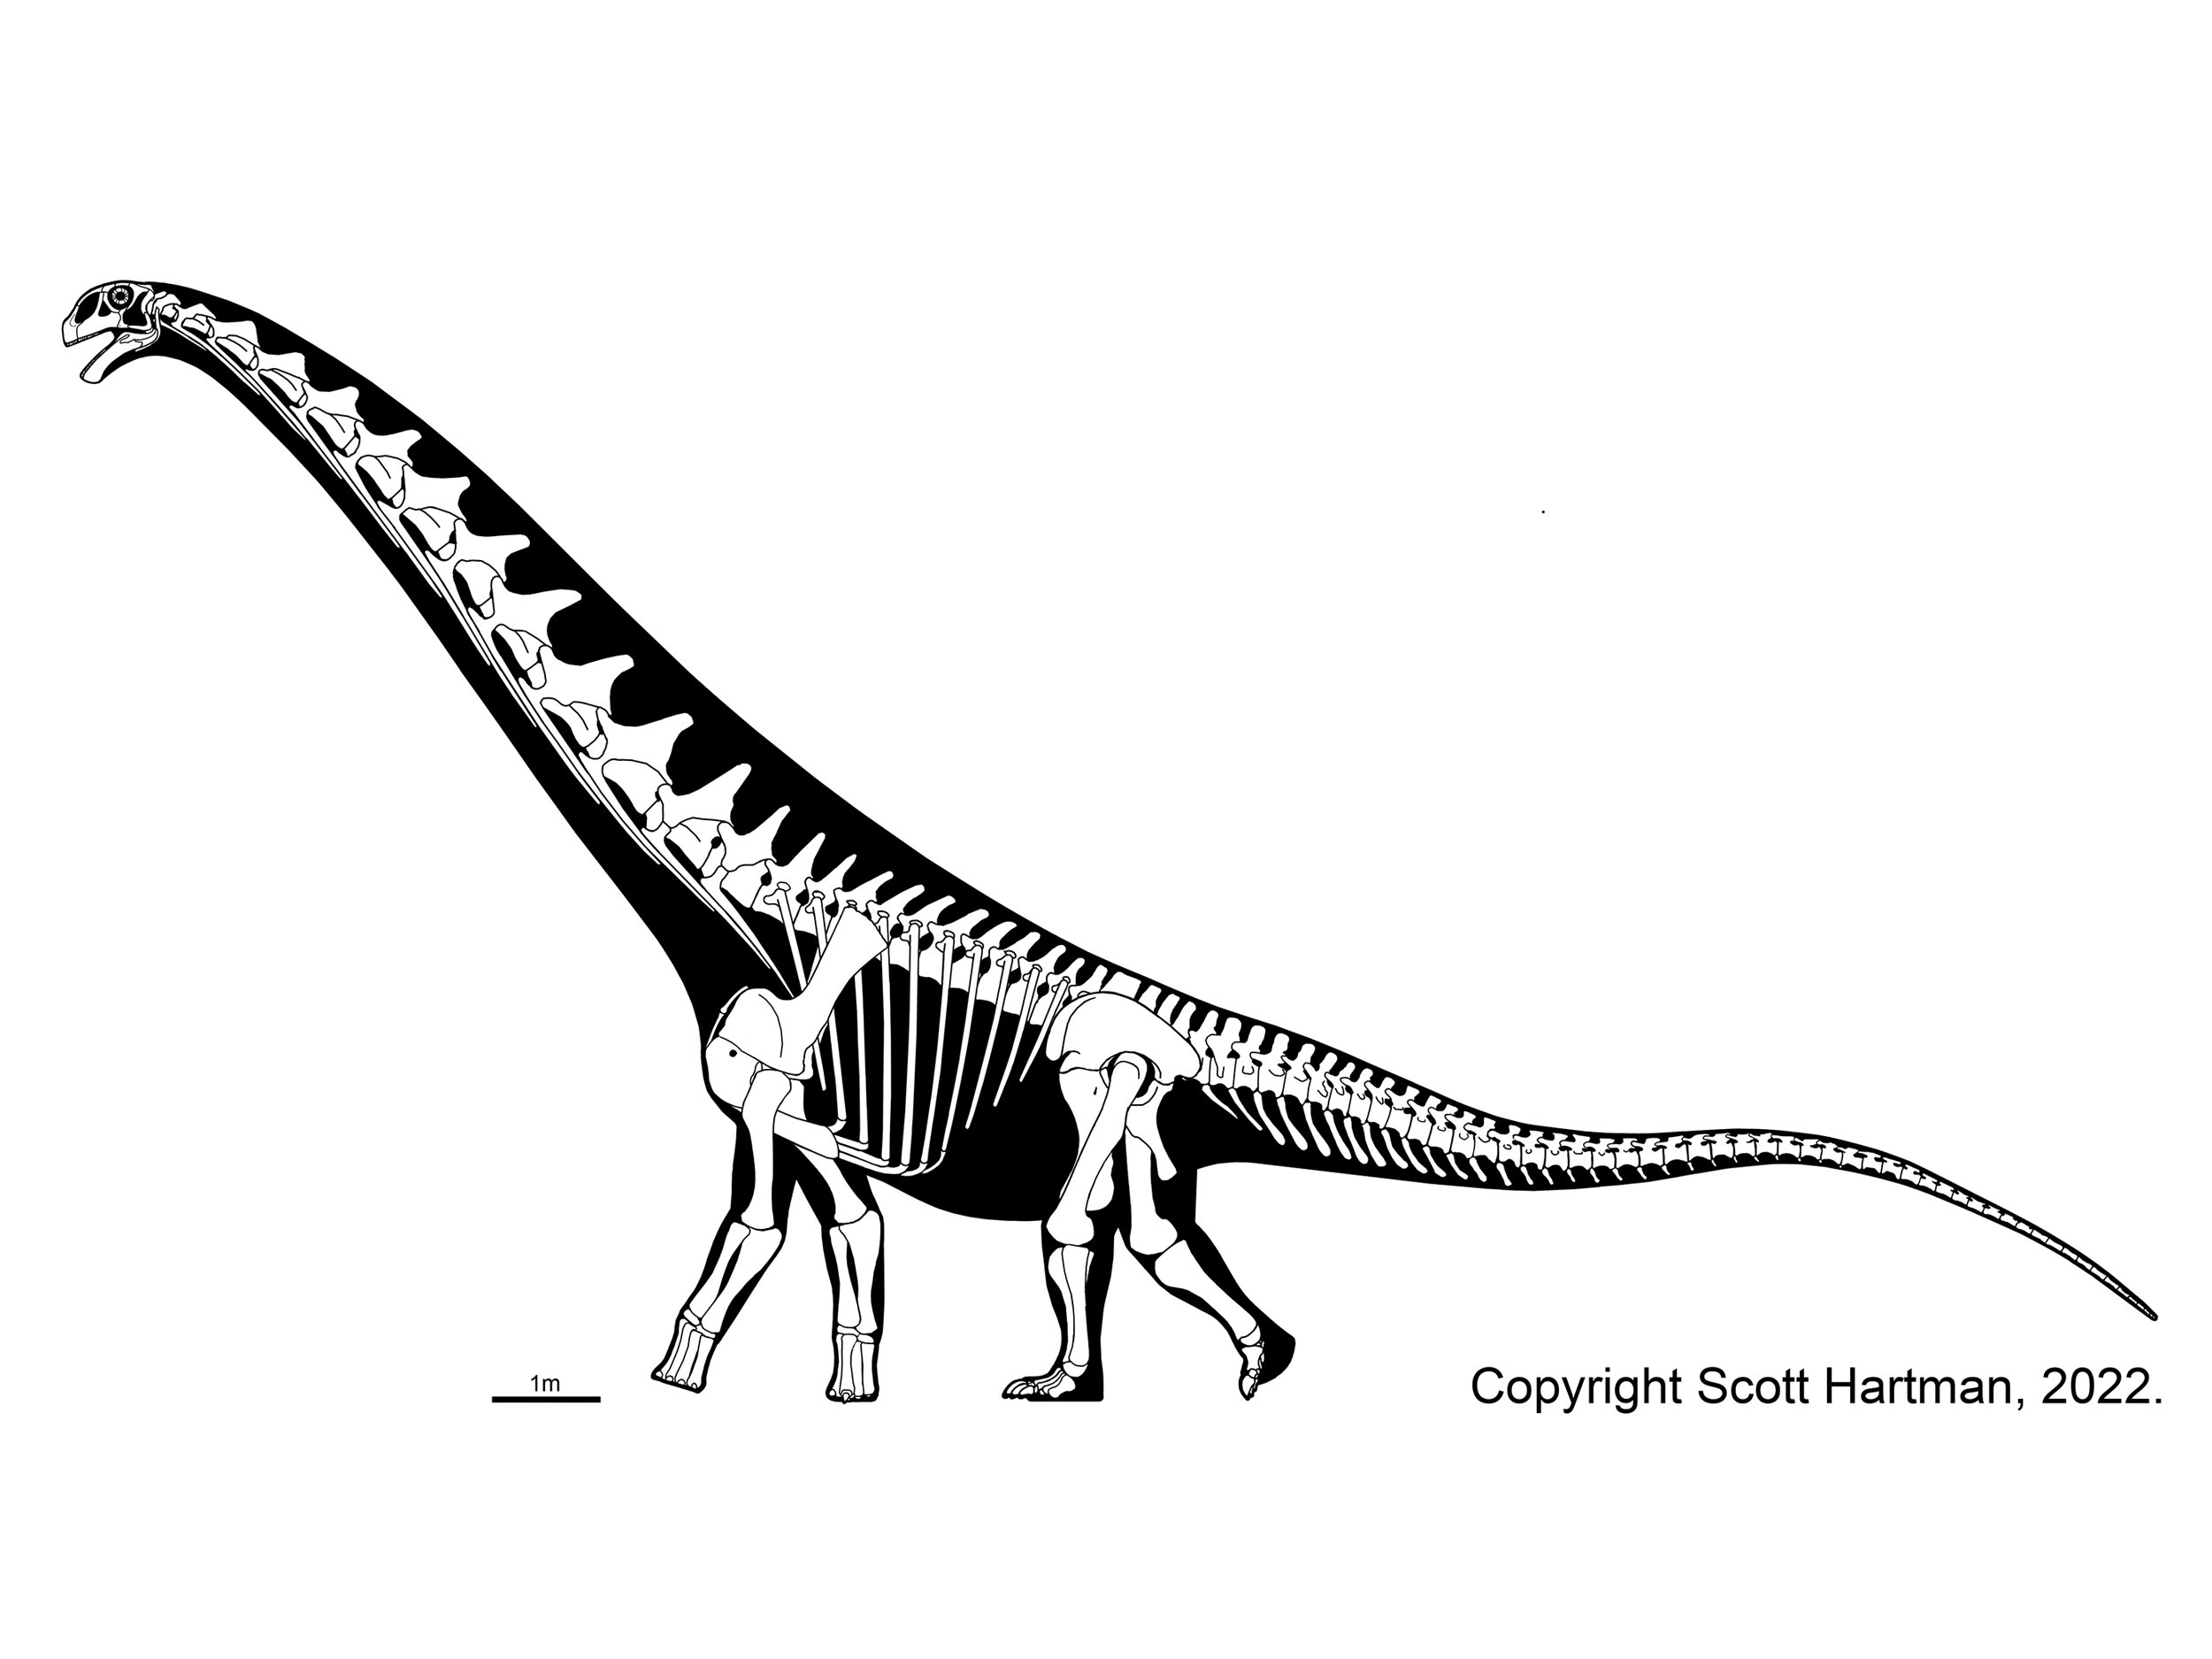 Futalognkosaurus dukei